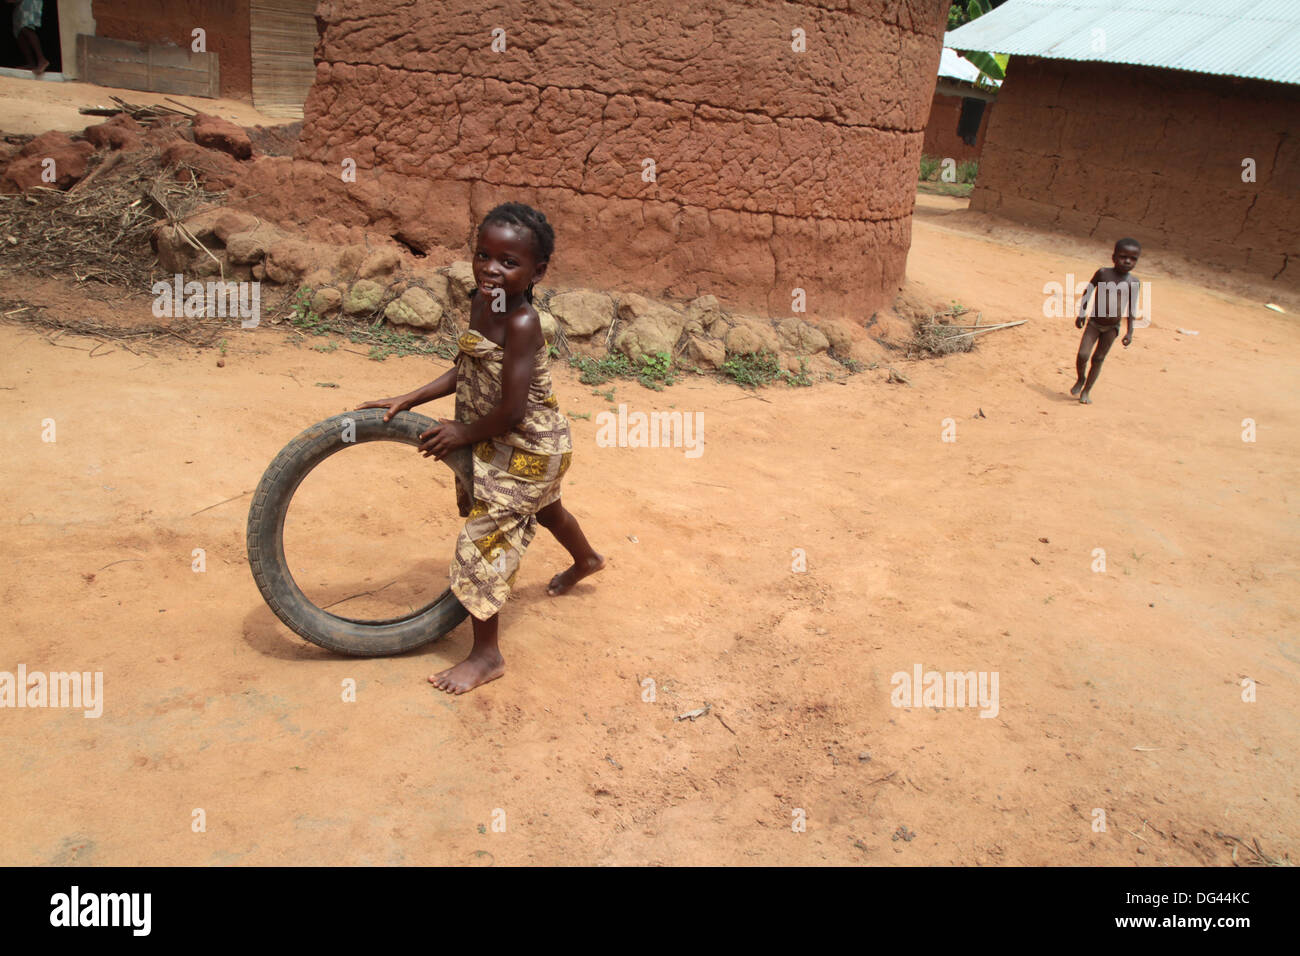 Jeune fille africaine s'amusant rouler un vieux pneu, Tori, Bénin, Afrique de l'Ouest, l'Afrique Banque D'Images